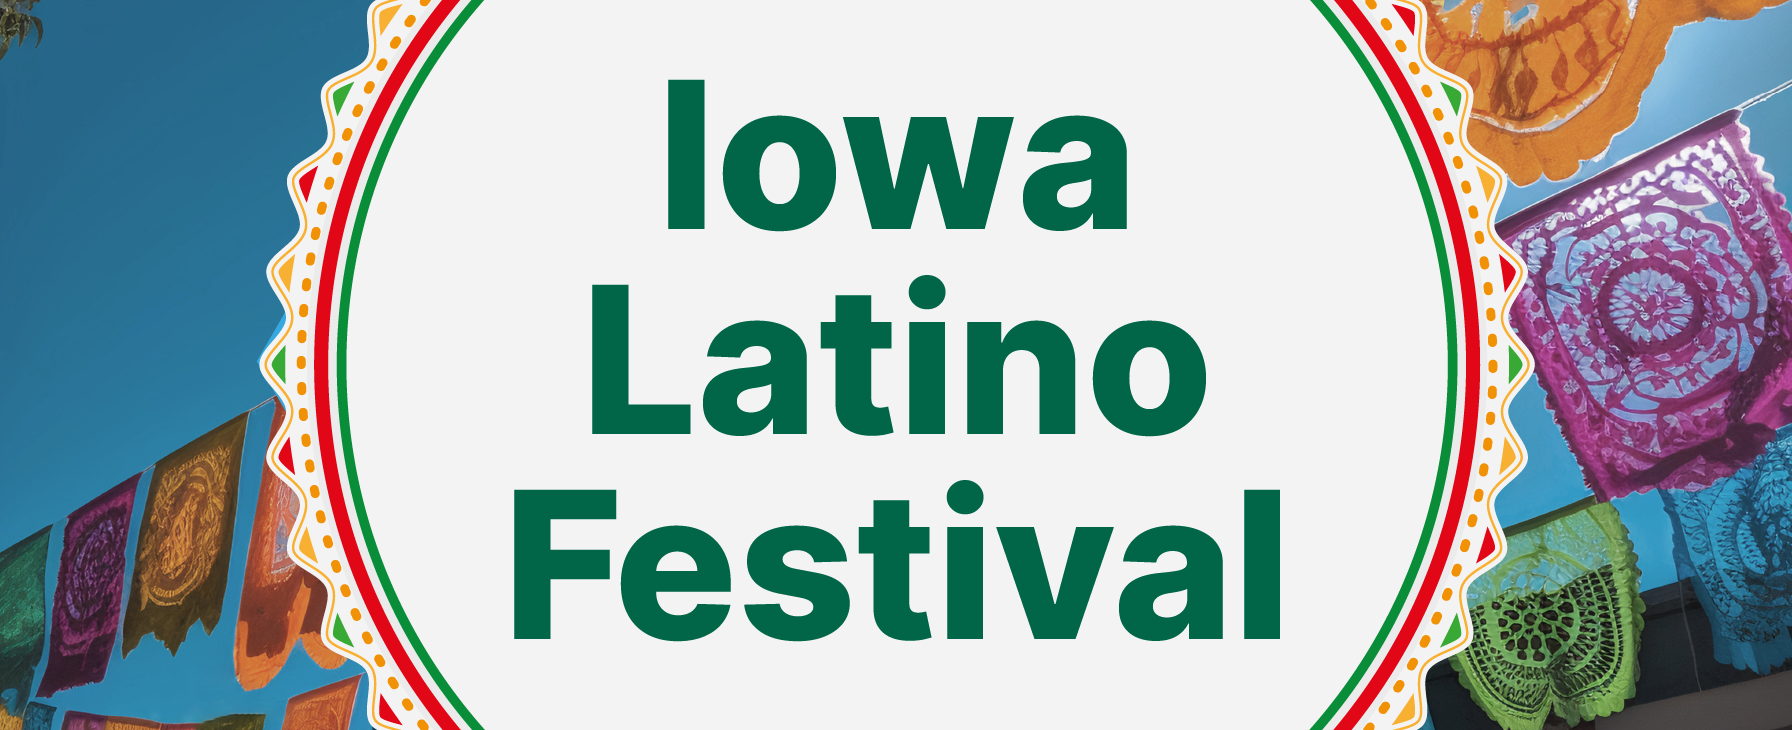 Iowa Latino Festival